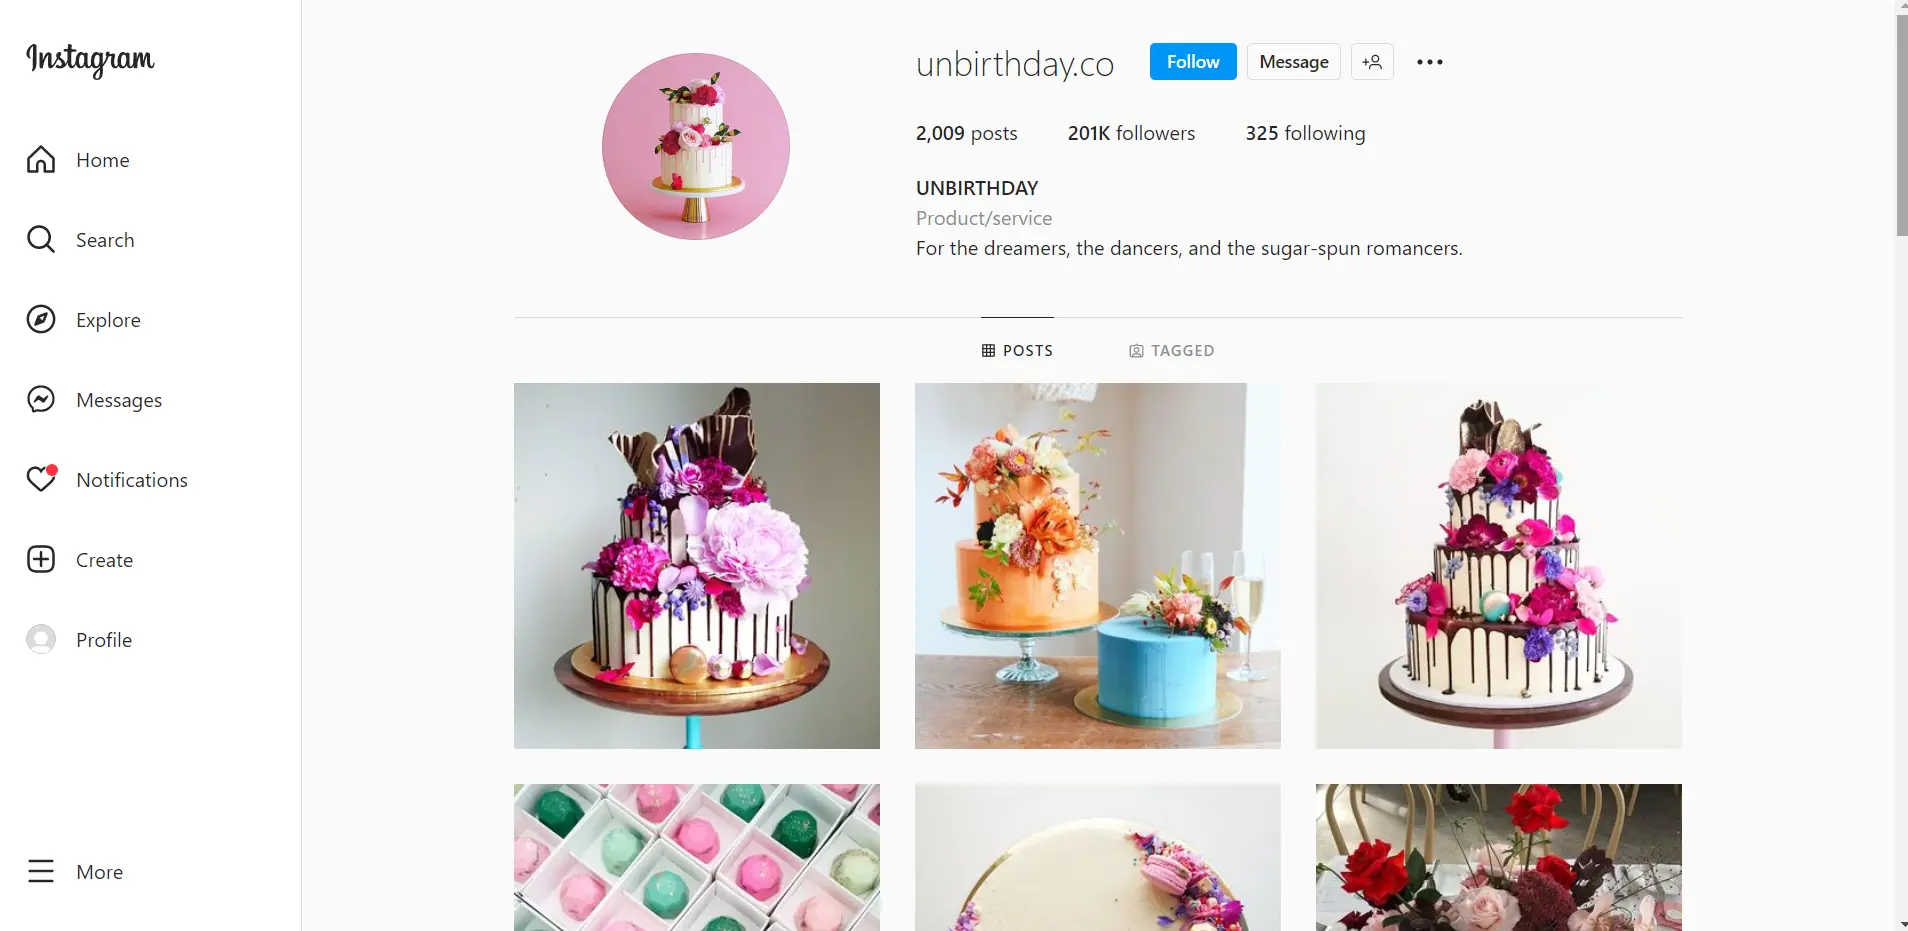 Unbirthday Instagram page